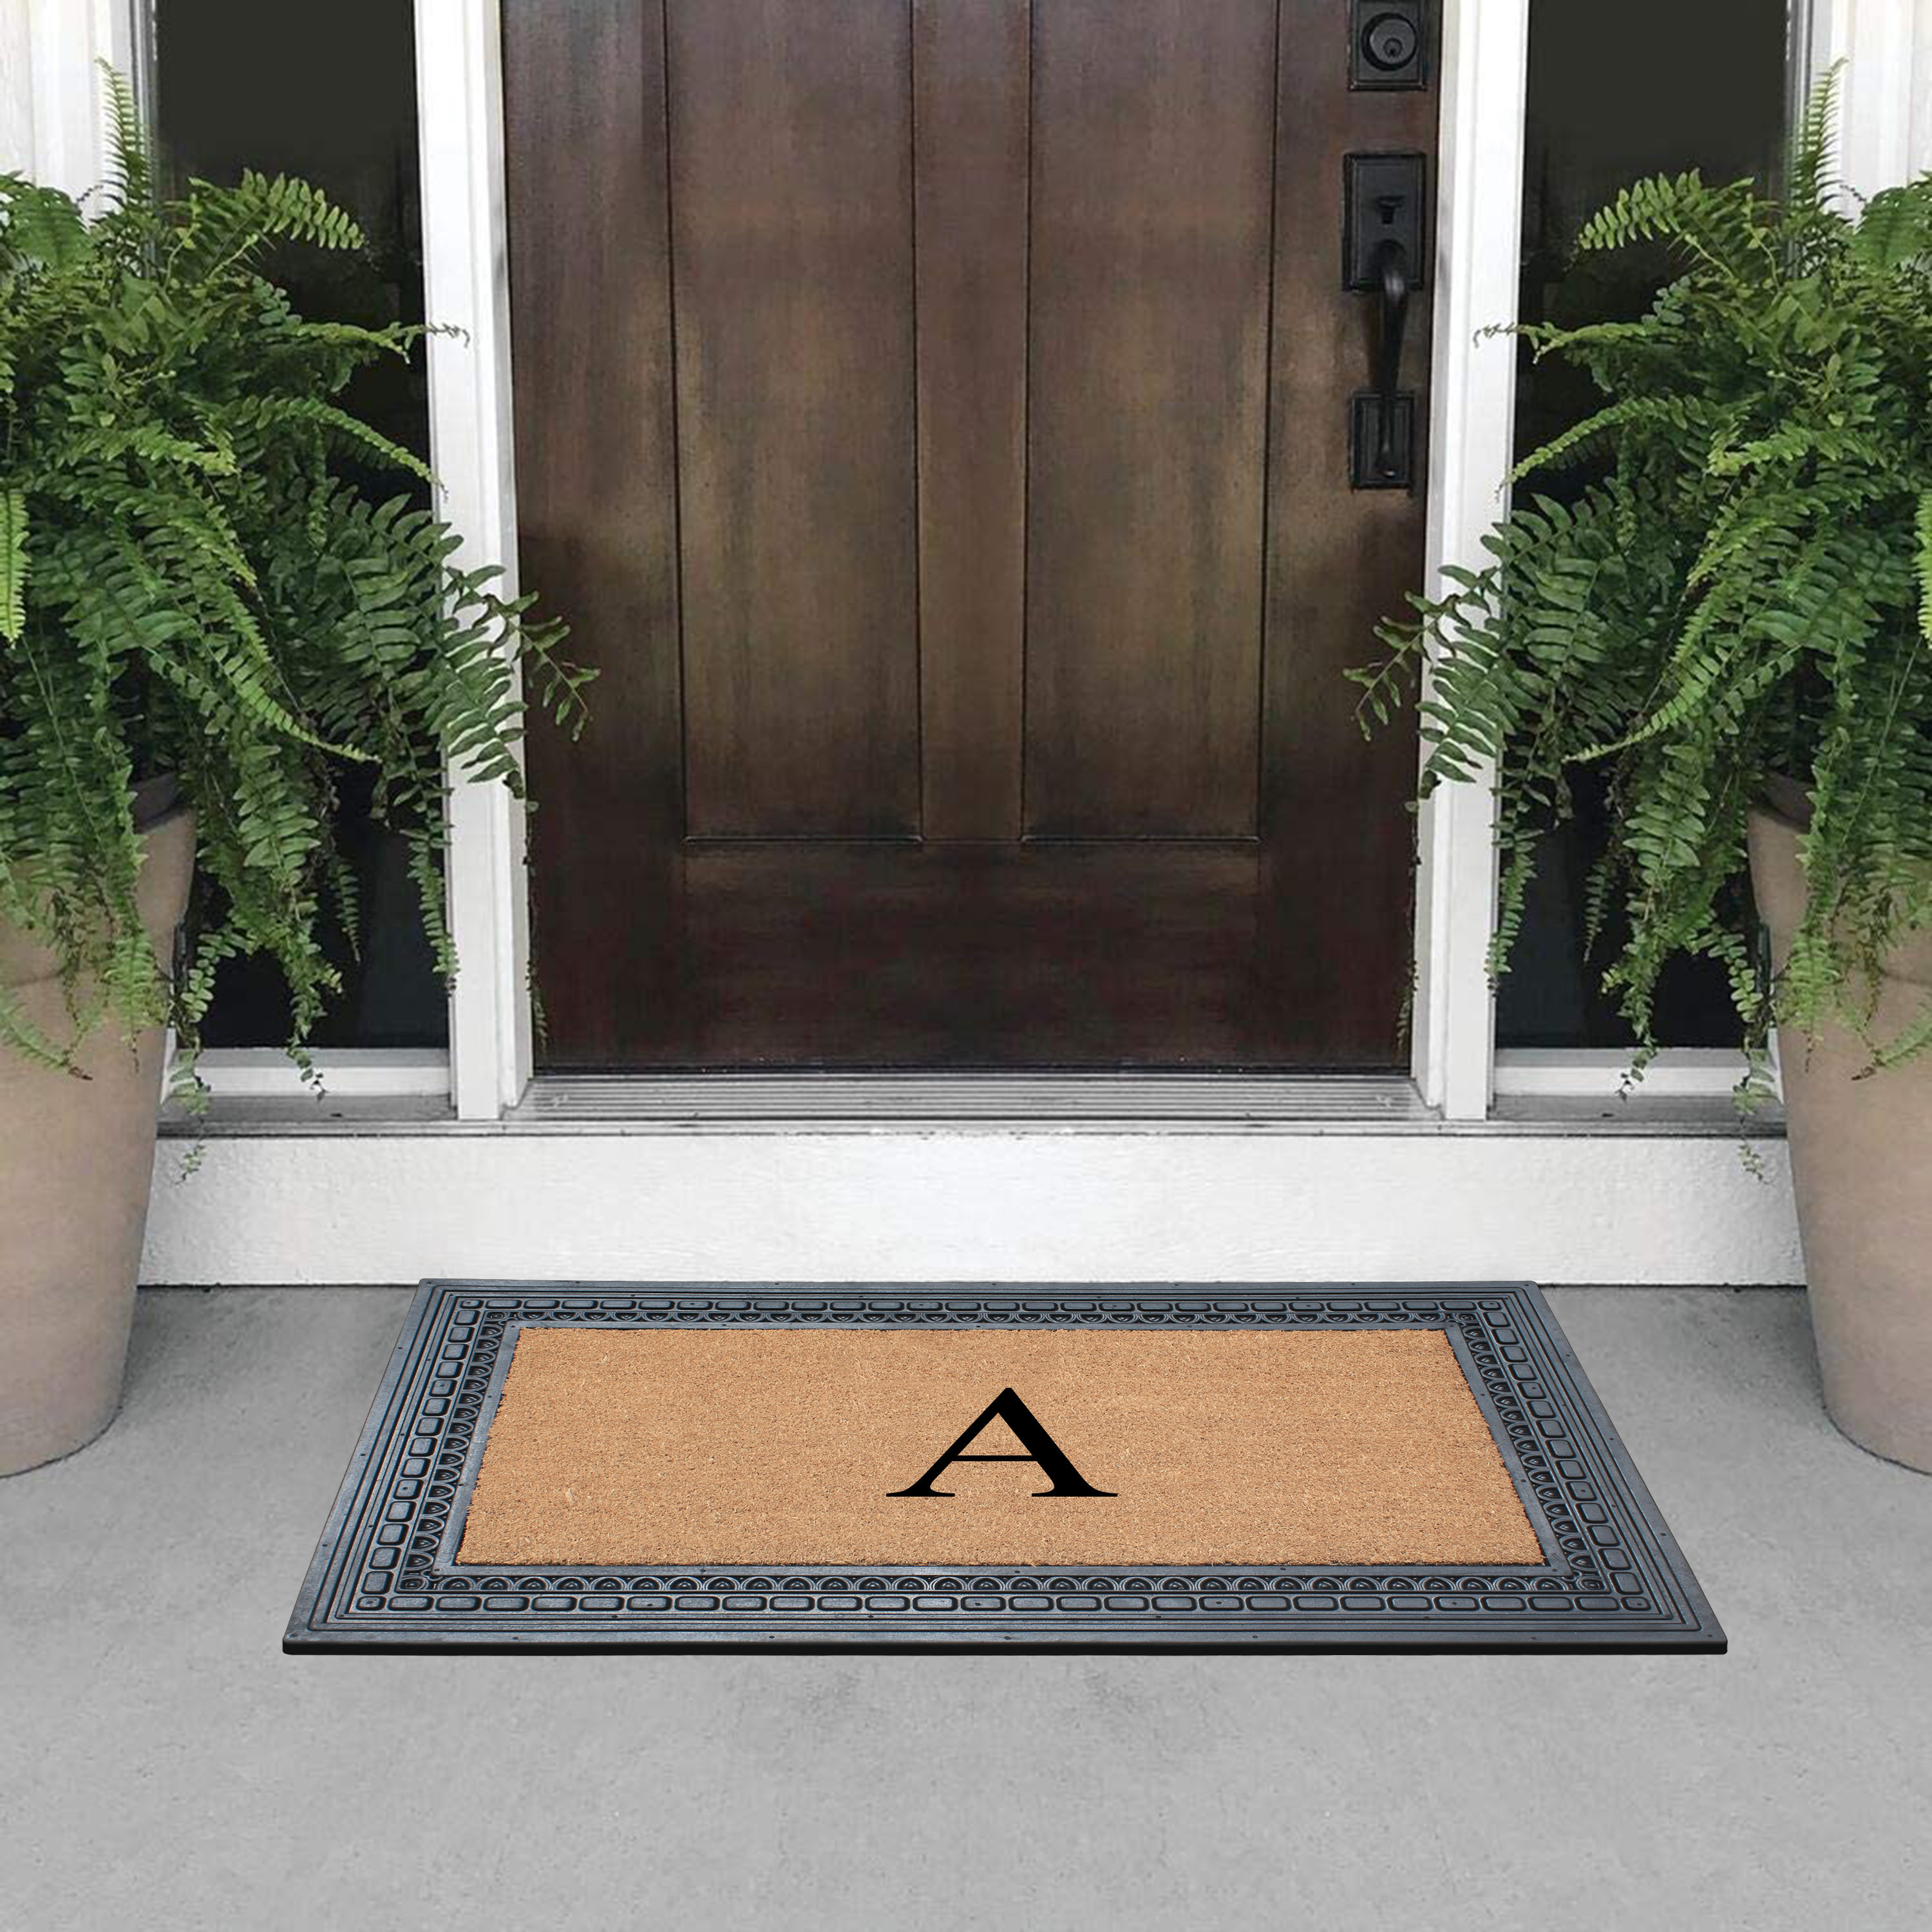 https://assets.wfcdn.com/im/16775878/compr-r85/2010/201081187/a1hc-rubber-and-coir-24-x-39-heavy-duty-outdoor-monogrammed-doormat.jpg